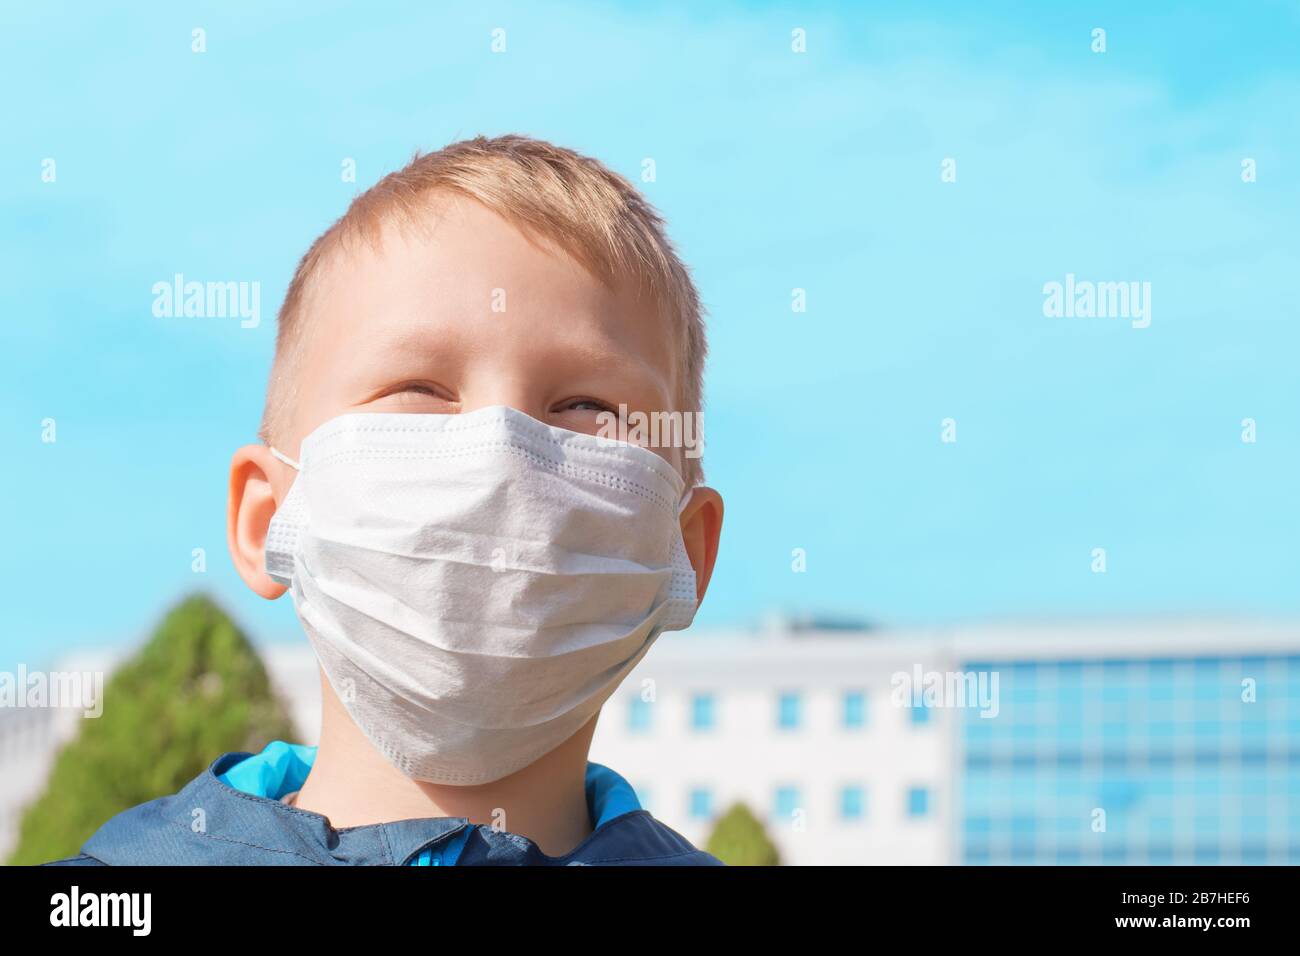 Ragazzo carino europeo in una maschera medica protettiva all'aperto in una chiara giornata di sole. Prevenzione delle malattie virali, concetto di protezione dai virus. Foto Stock